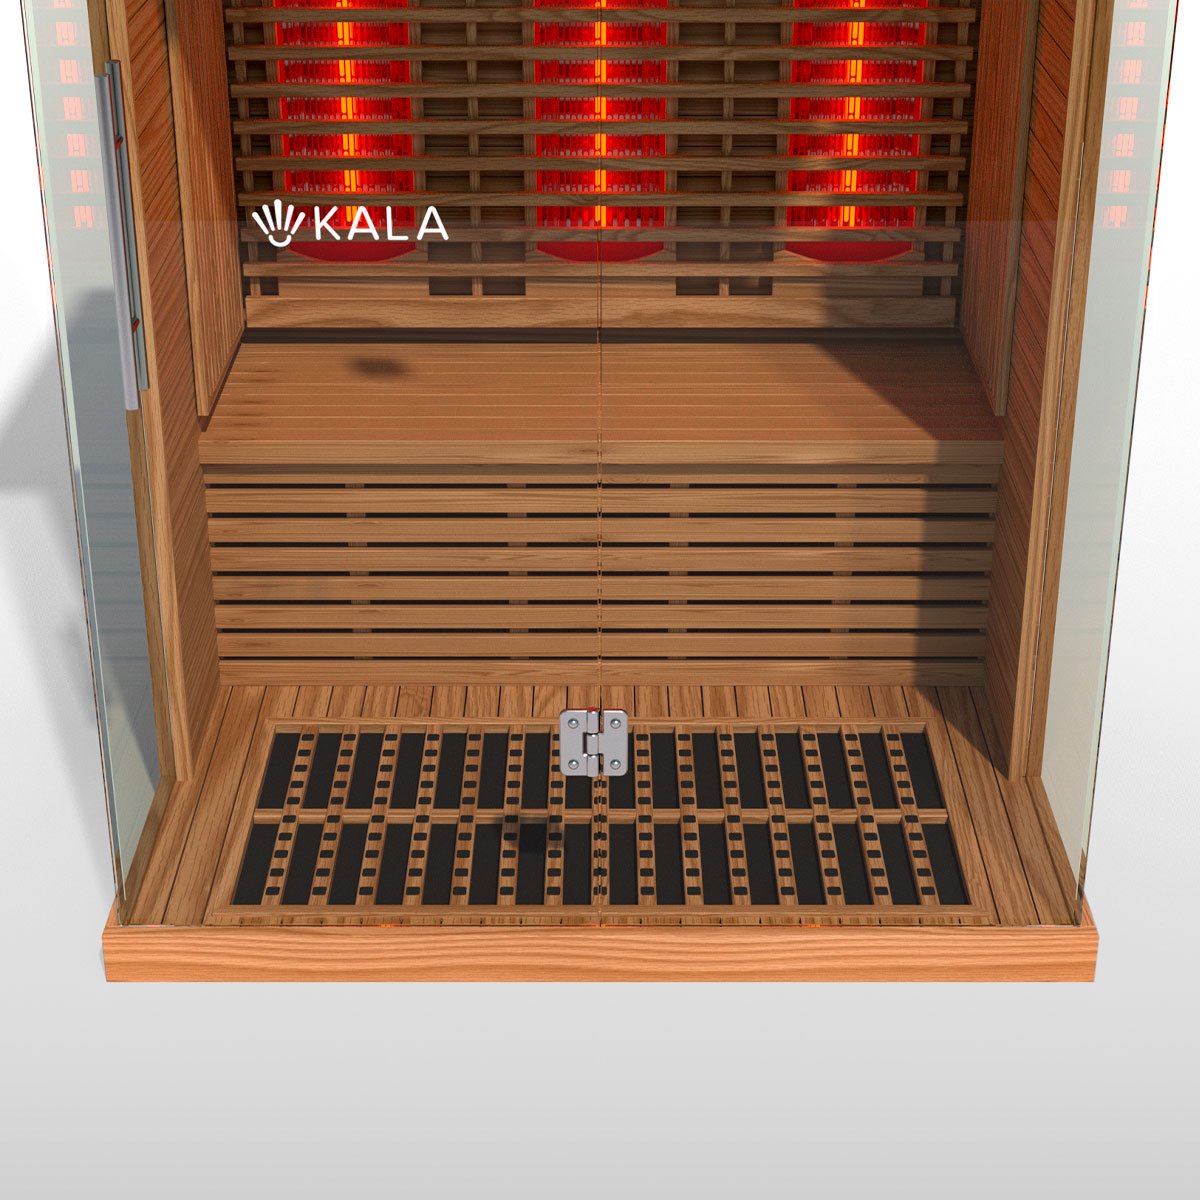 Kala Infrared Sauna